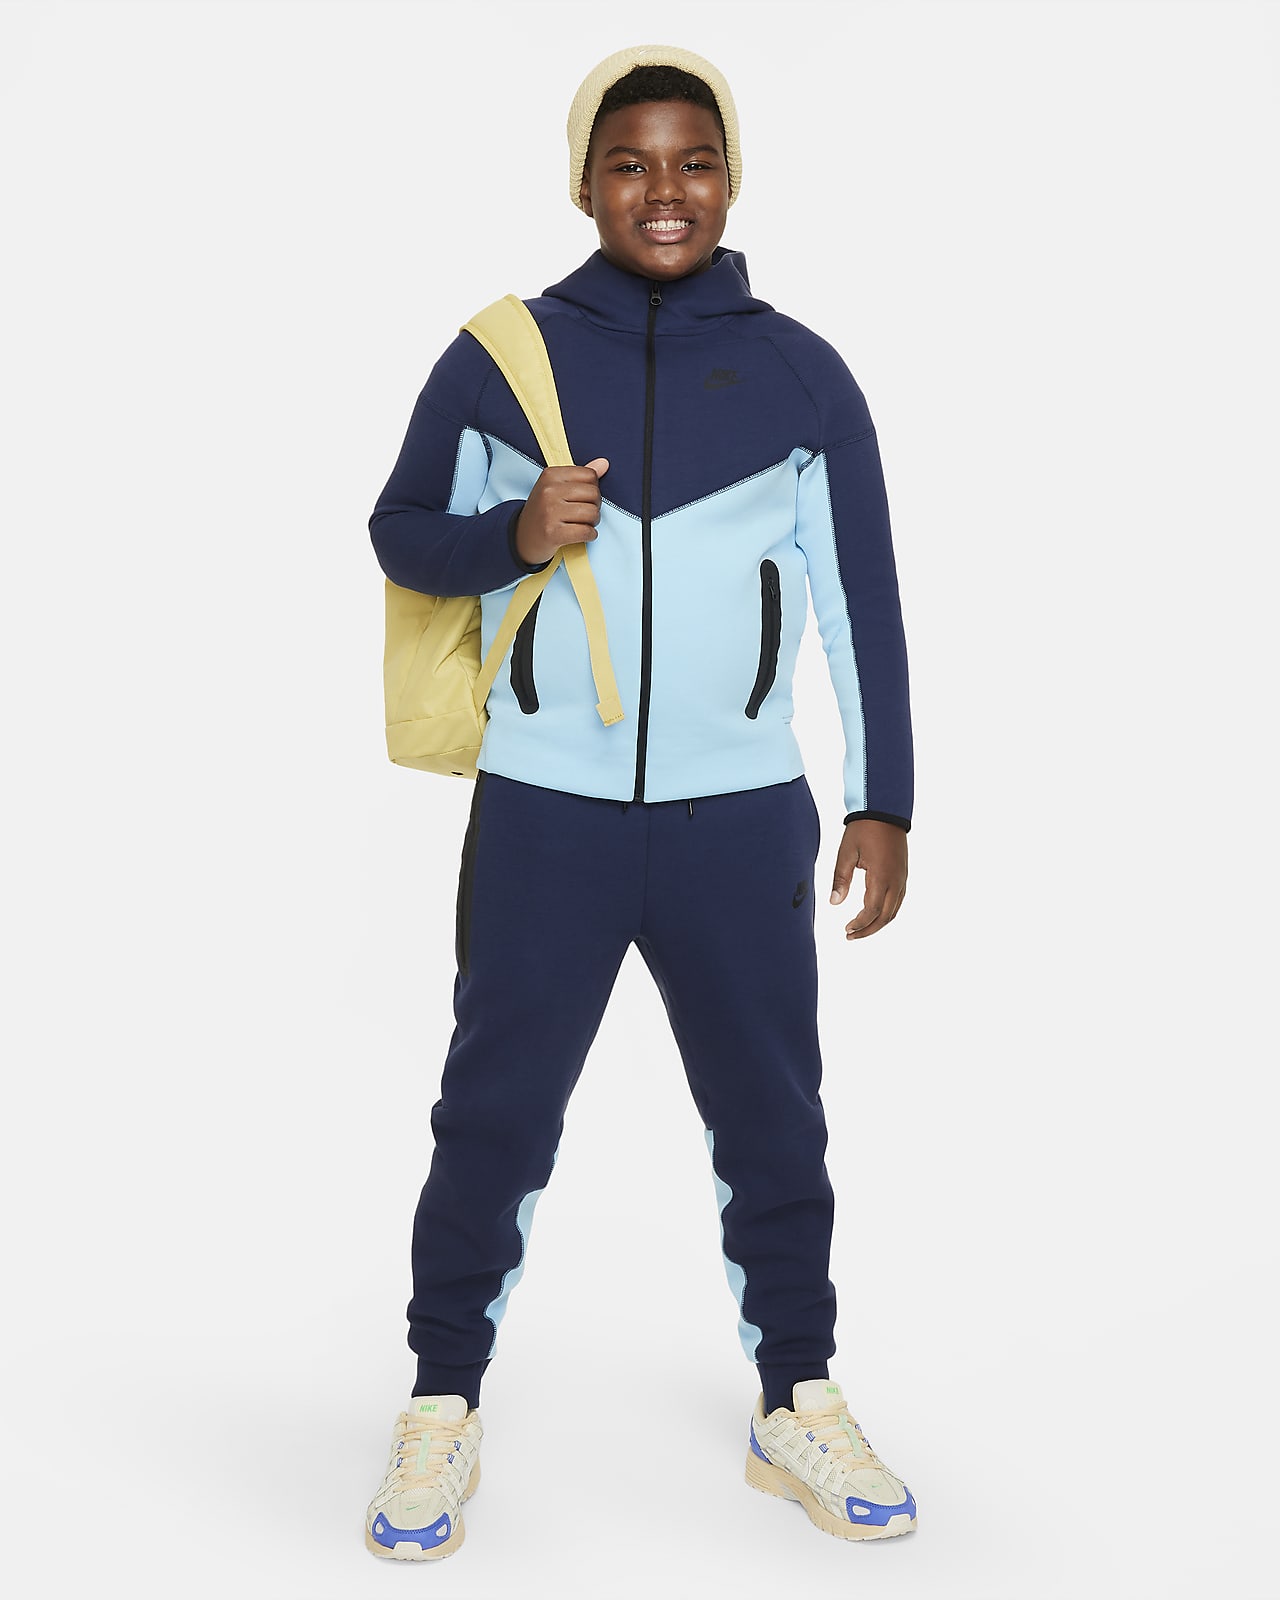 Nike Sportswear Junior Boys' Tech Fleece Full Zip Hoodie Black / Black